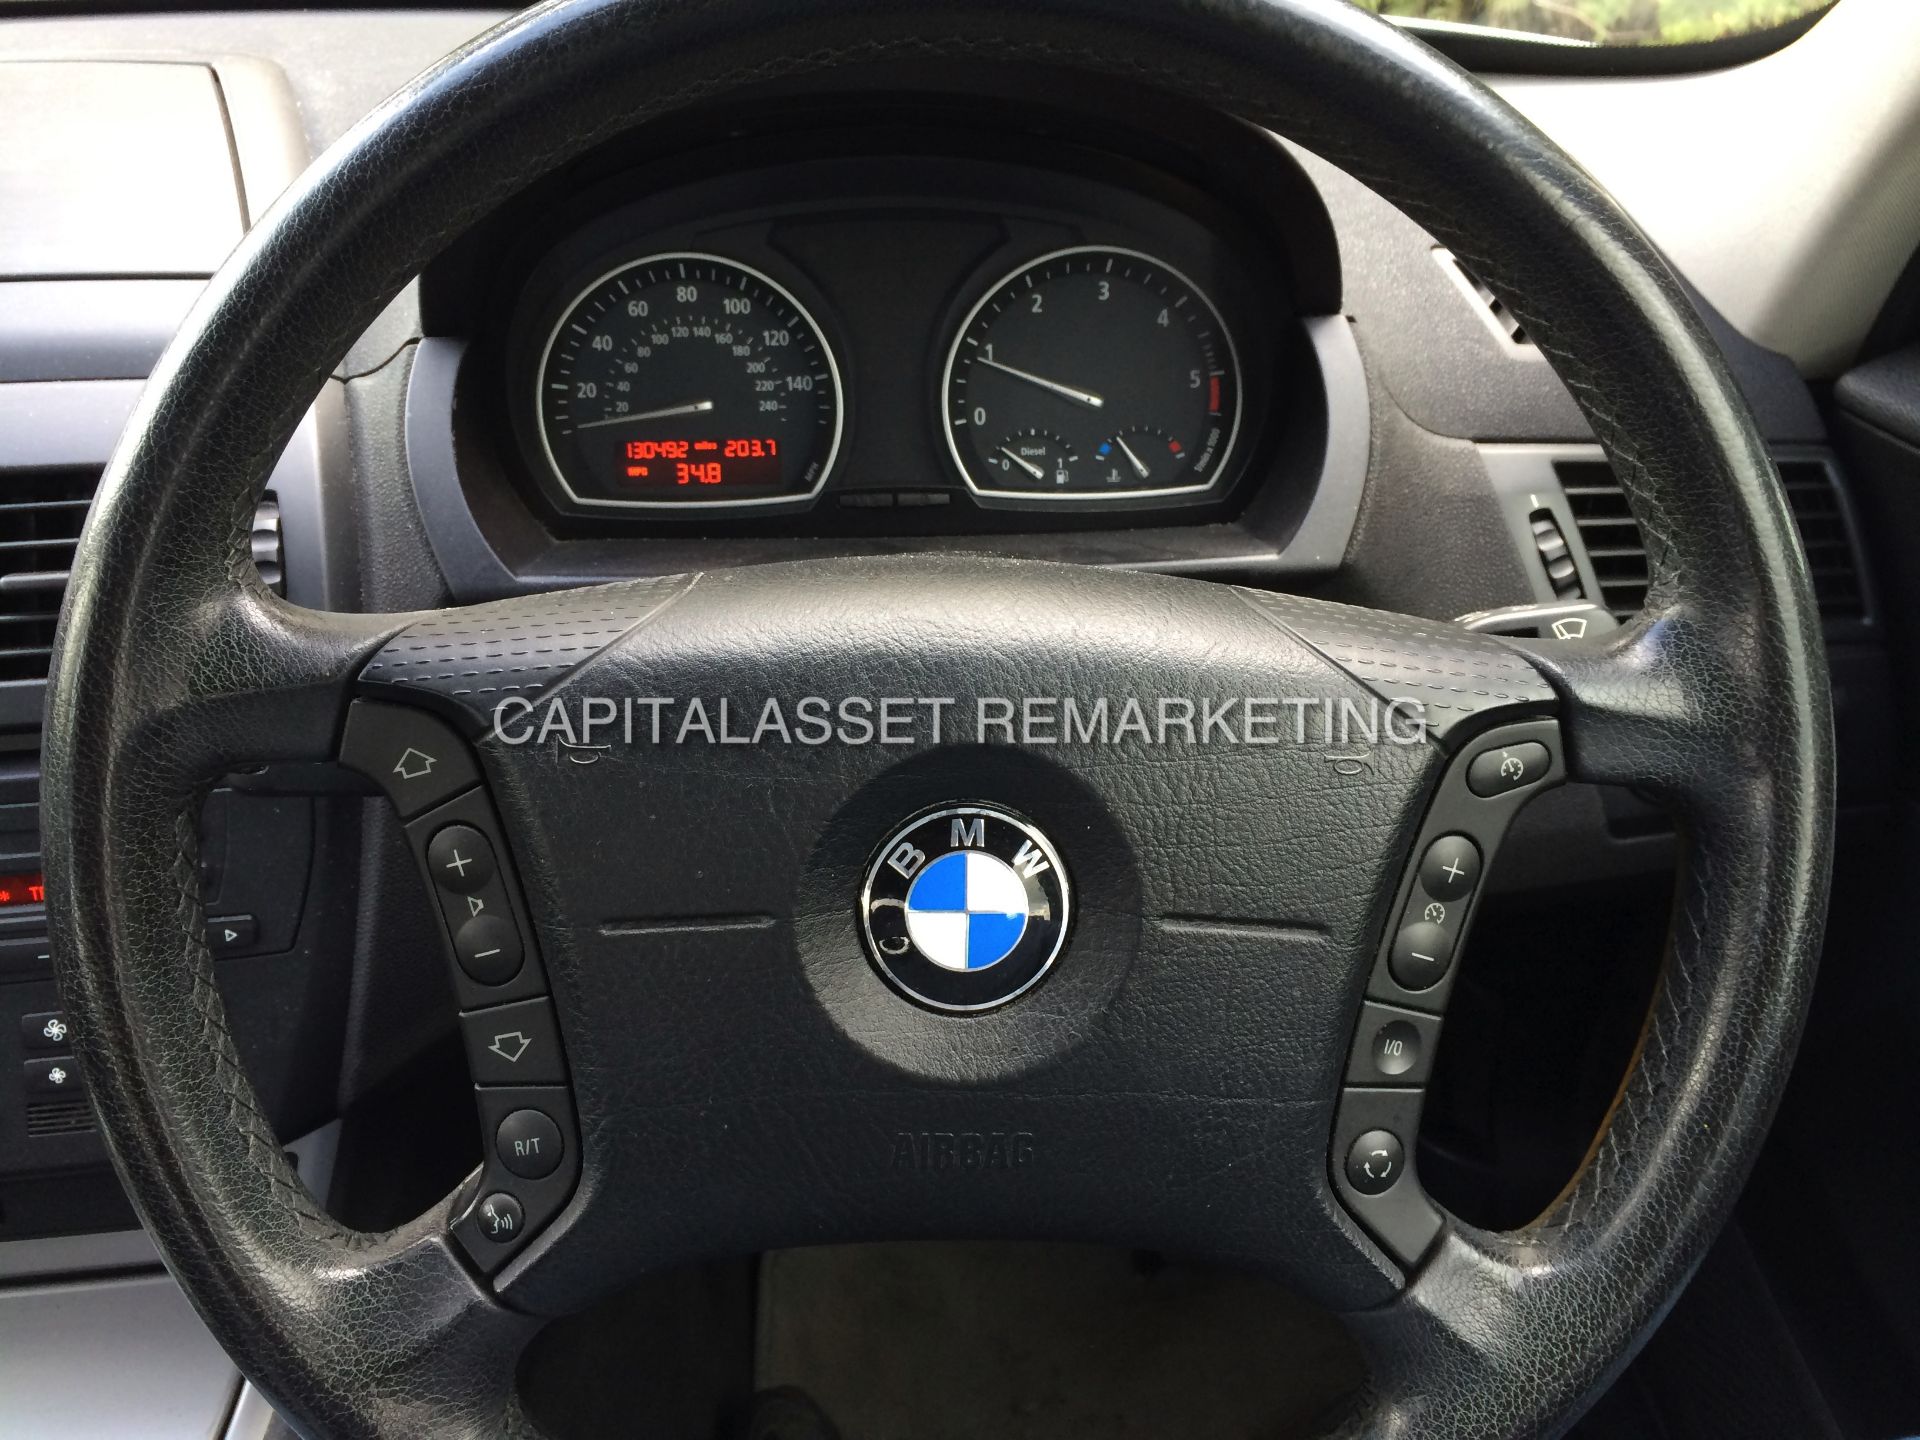 BMW X3 2.0D 5 DOOR 4X4 MANUAL 2005 05 REG *AIR CON* *NO VAT SAVE 20%*!! - Image 13 of 14